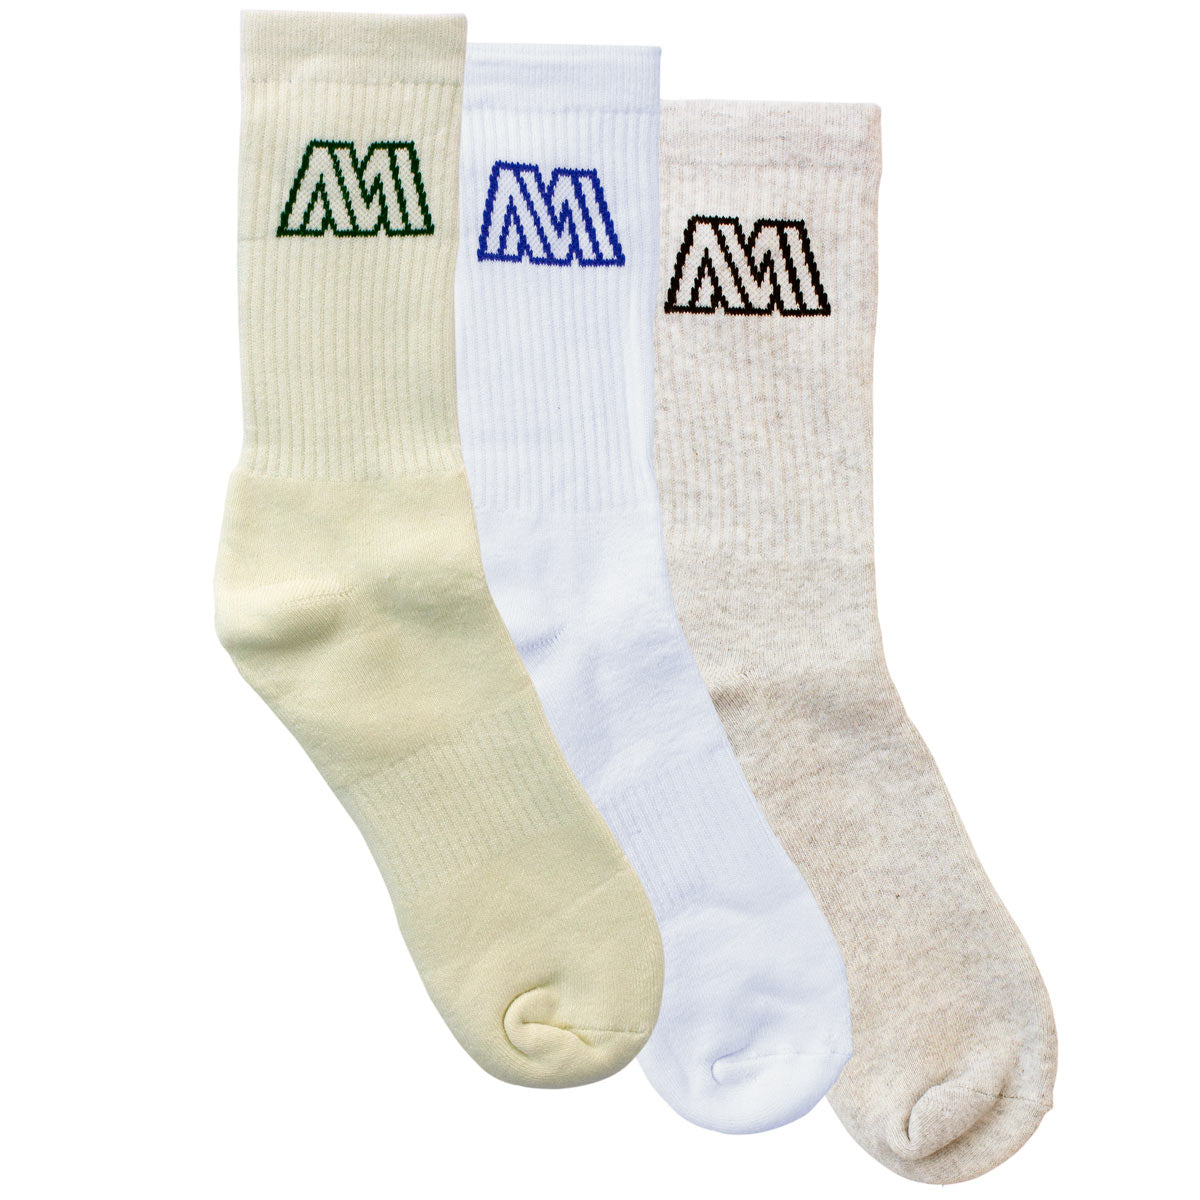 Warped Sock Three Pack - Mix & Match